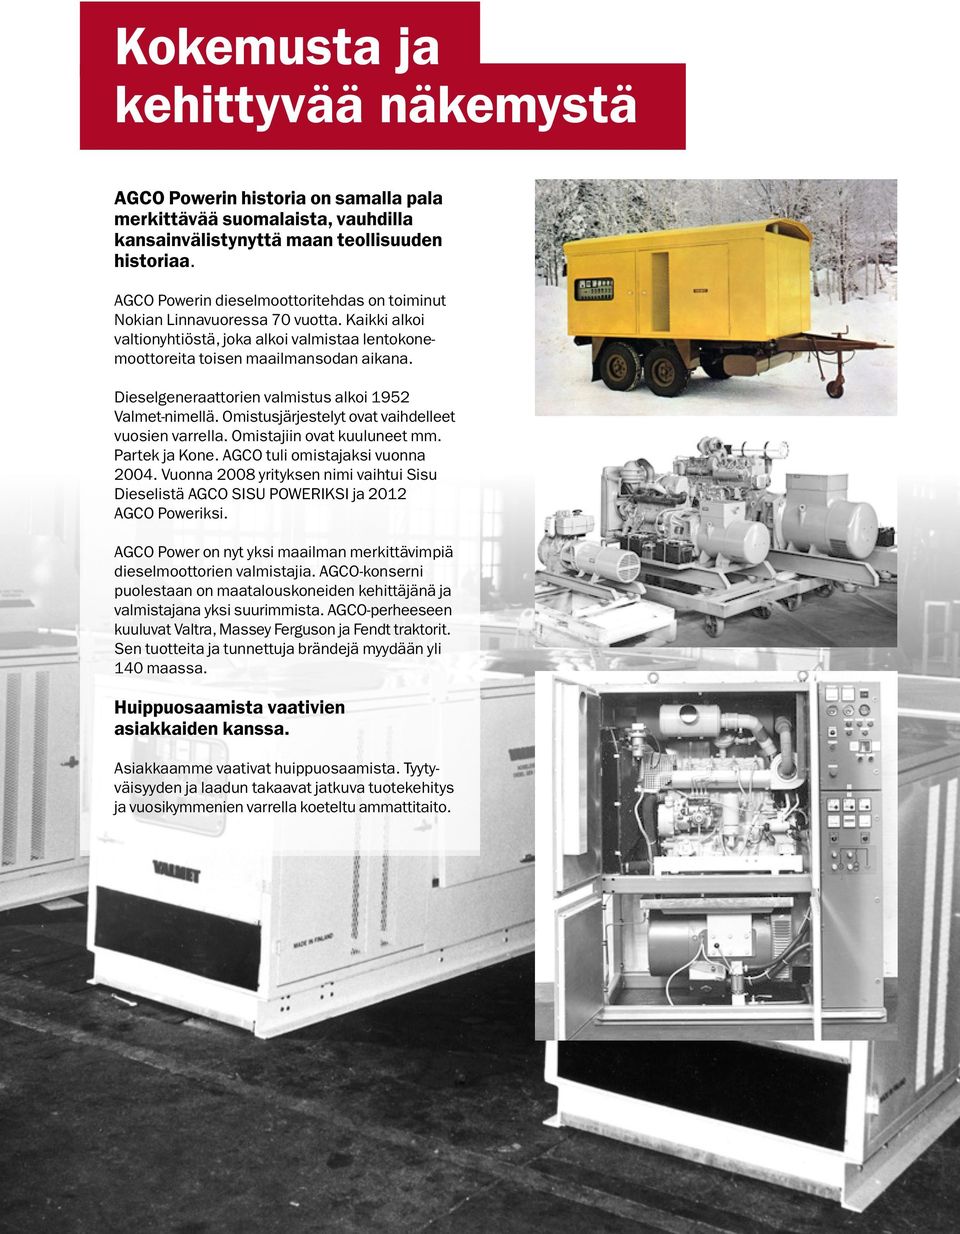 Dieselgeneraattorien valmistus alkoi 1952 Valmet-nimellä. Omistusjärjestelyt ovat vaihdelleet vuosien varrella. Omistajiin ovat kuuluneet mm. Partek ja Kone. AGCO tuli omistajaksi vuonna 2004.